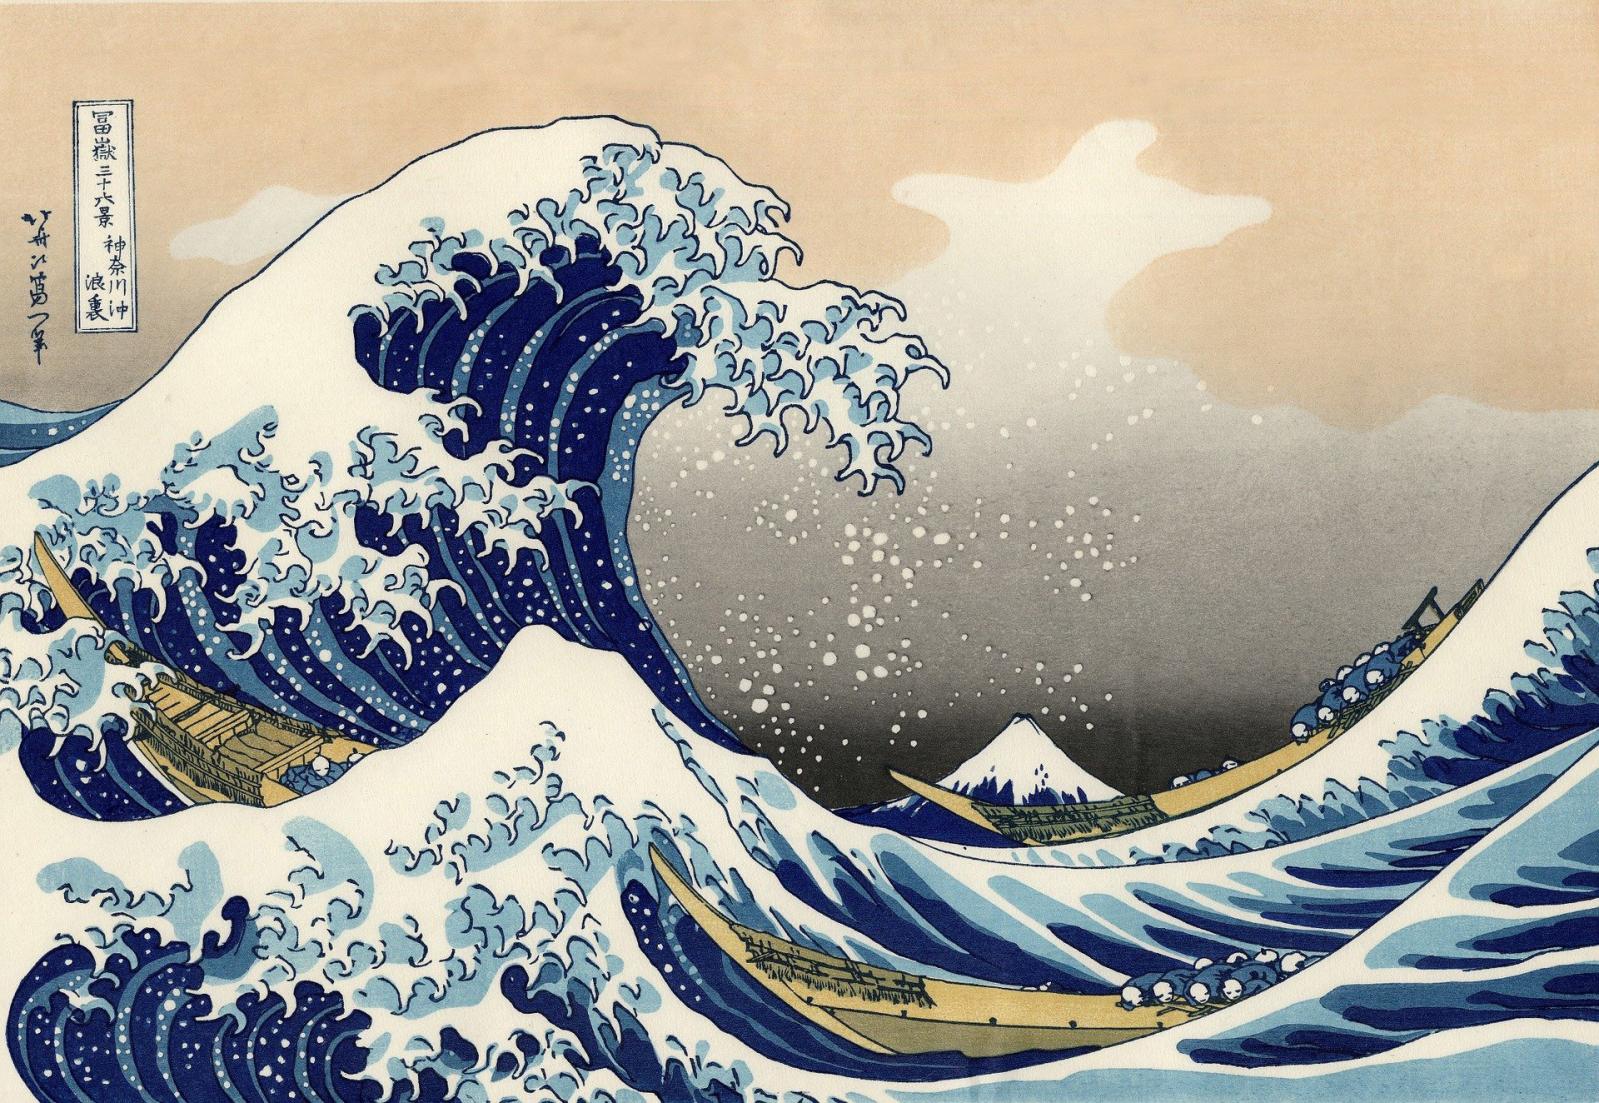 L'Observatoire : Hokusai, de l’estampe aux NFT